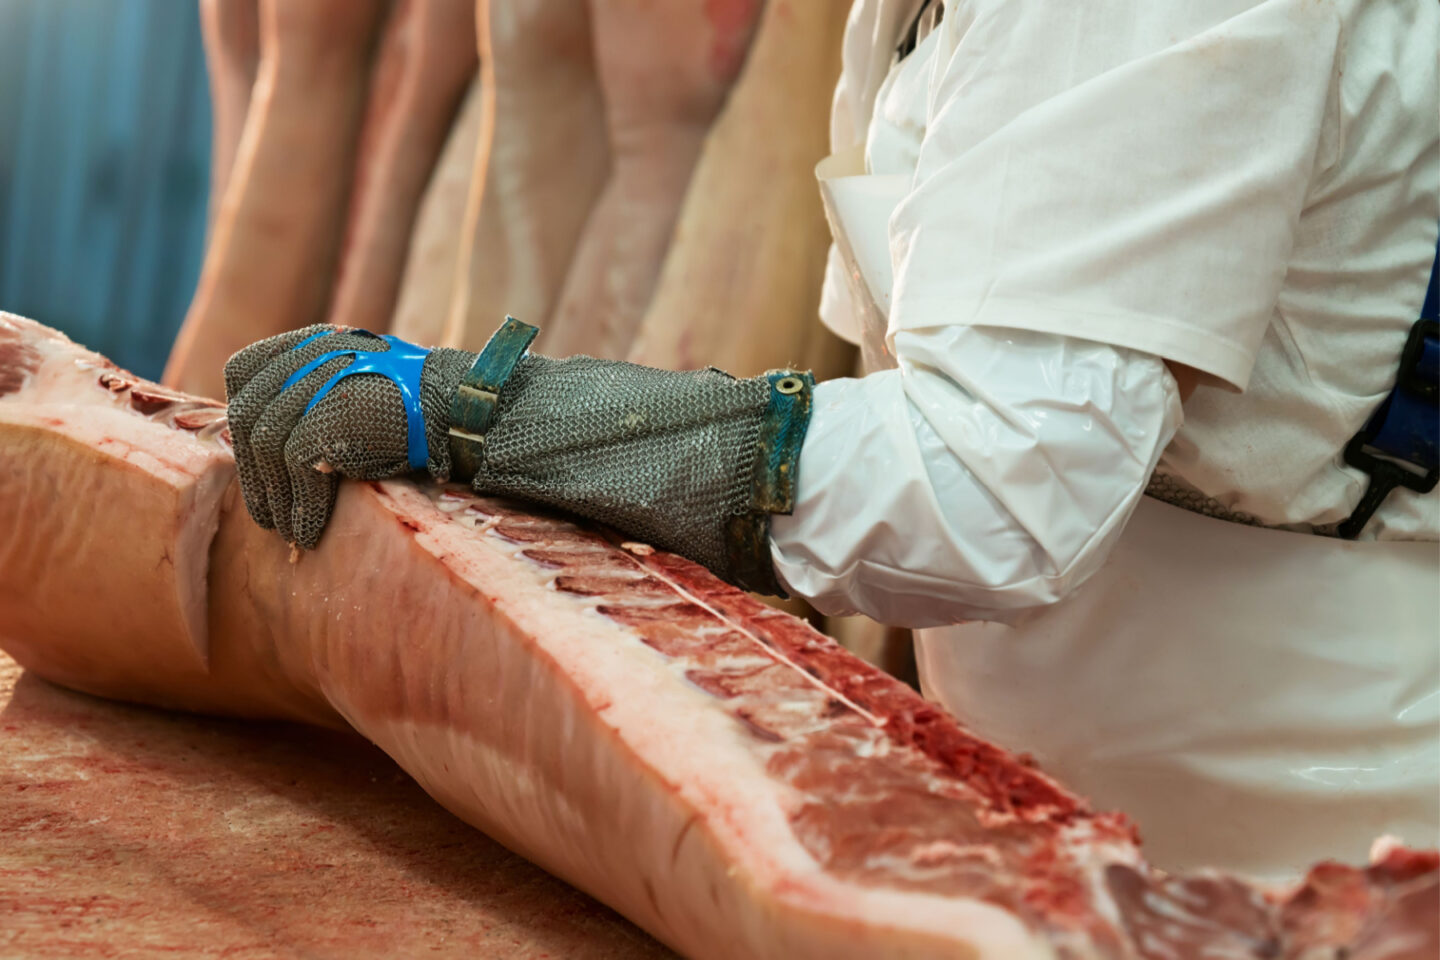 butcher slicing pork chops